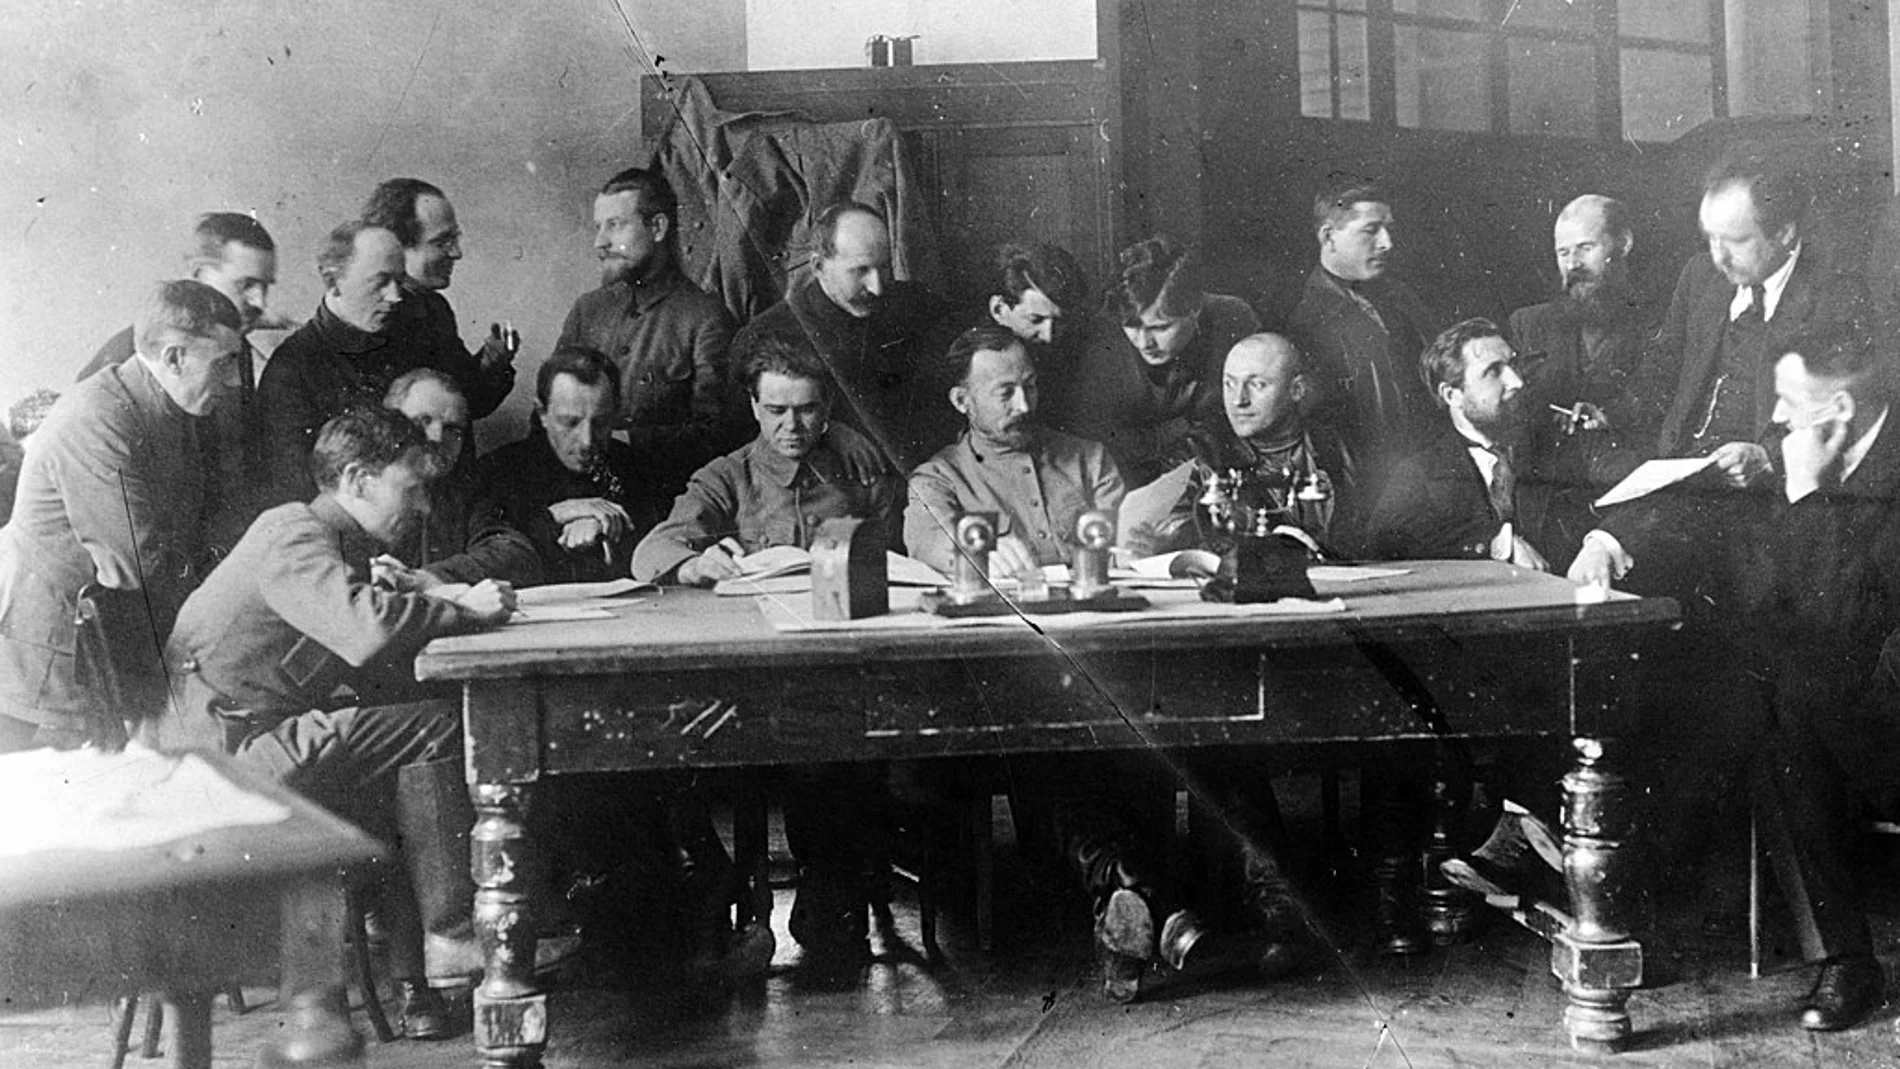 Algunos miembros de la Cheka, la primera organización de inteligencia política y militar soviética, en 1919